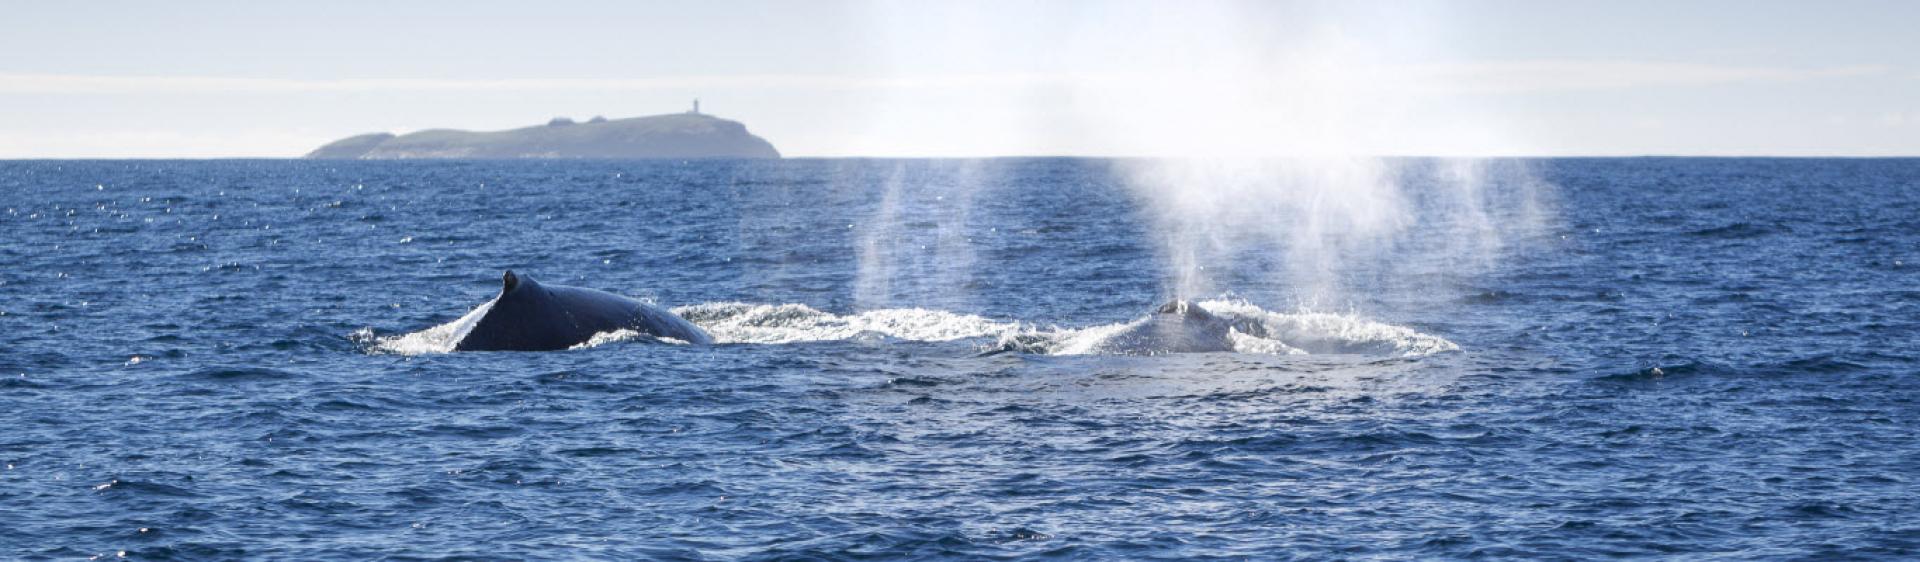 Wale beobachten, Coffs Coast